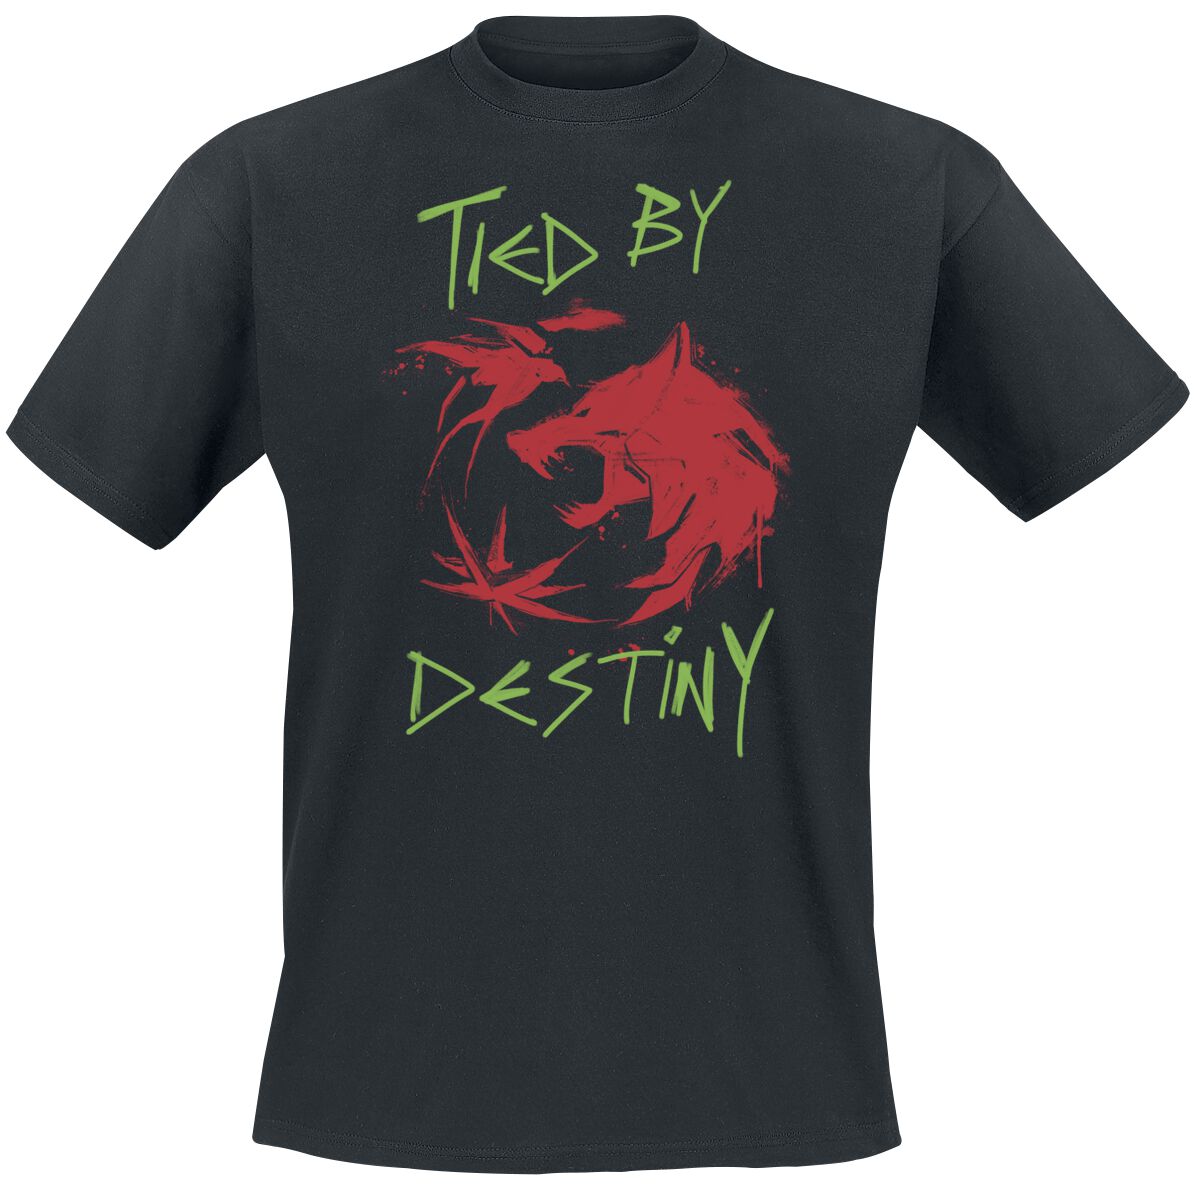 The Witcher T-Shirt - Season 3 - Destiny - S bis XXL - für Männer - Größe S - schwarz  - EMP exklusives Merchandise!